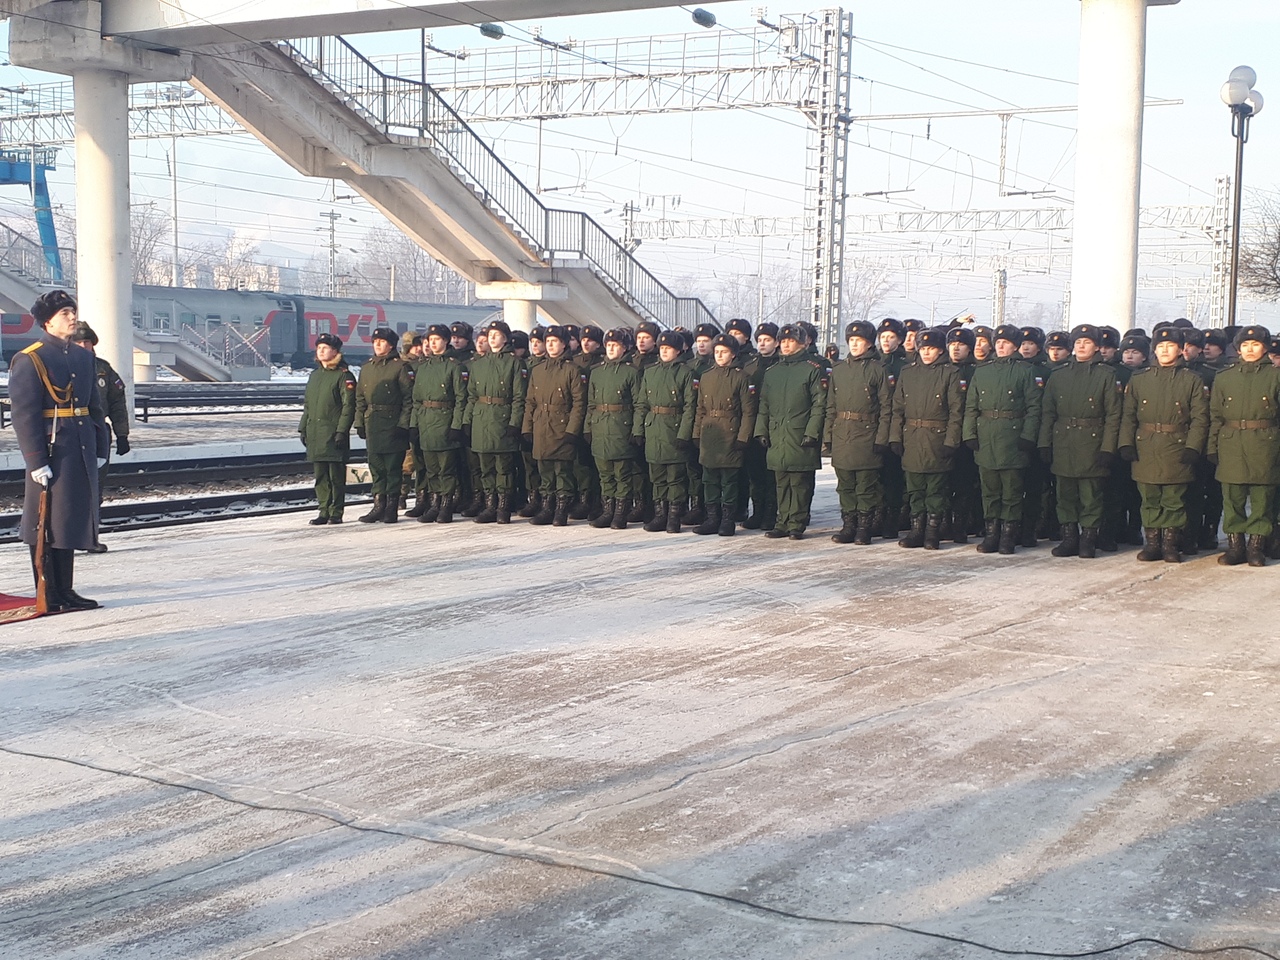 Осипов, военные и десятки читинцев встретили на вокзале 30 лаосских танков Т-34